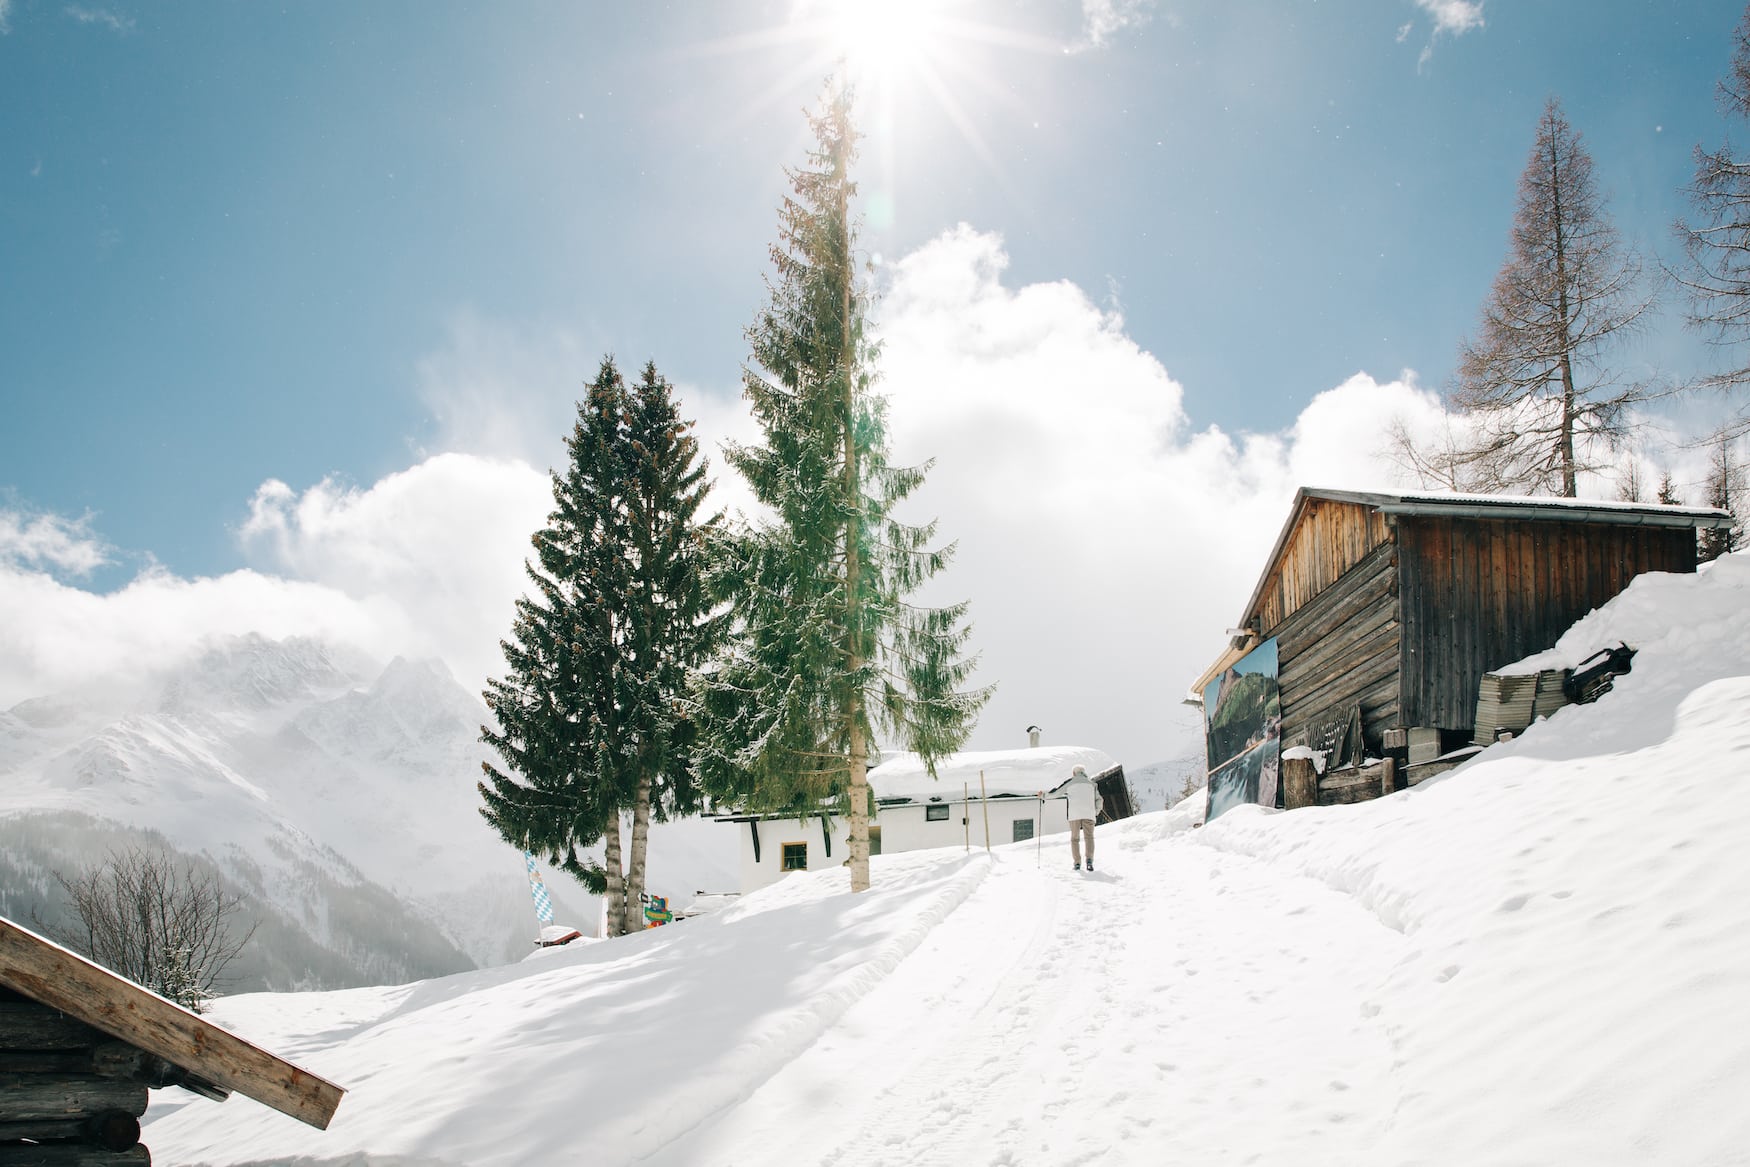 Aktiv im Urlaub – dank des gesunden Bergklimas sind Winterwanderungen in St. Anton am Arlberg/Österreich gemütlicher Spaziergang und Trainingseinheit zugleich